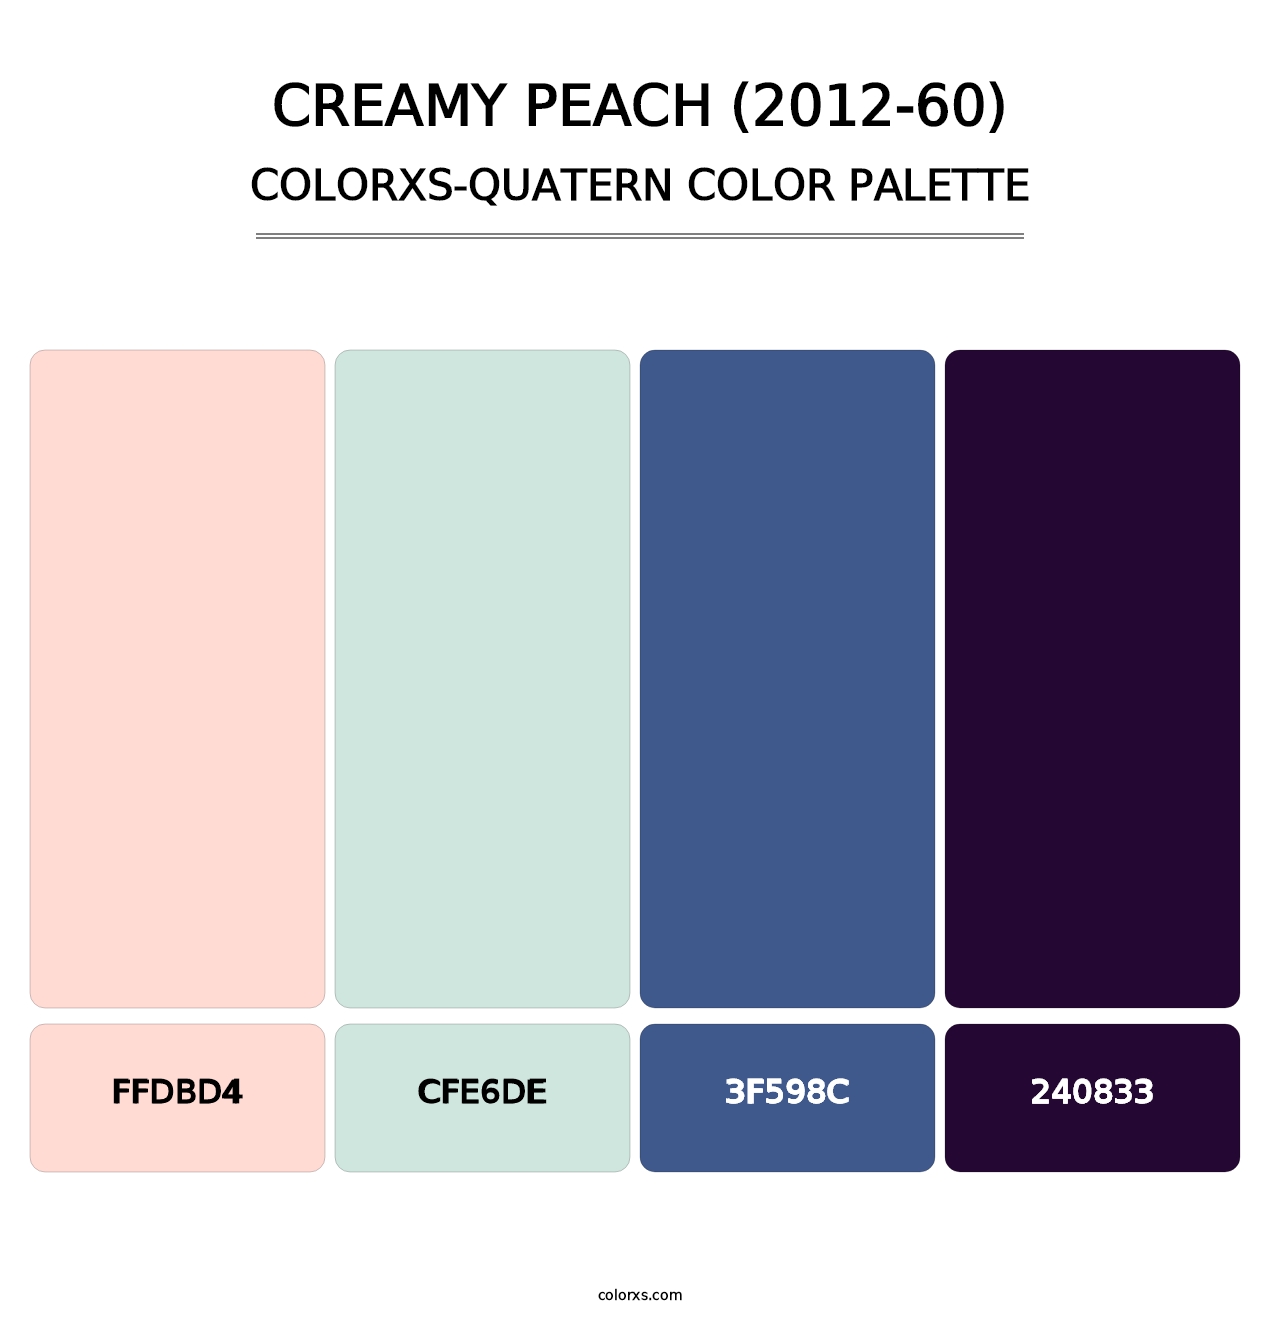 Creamy Peach (2012-60) - Colorxs Quatern Palette